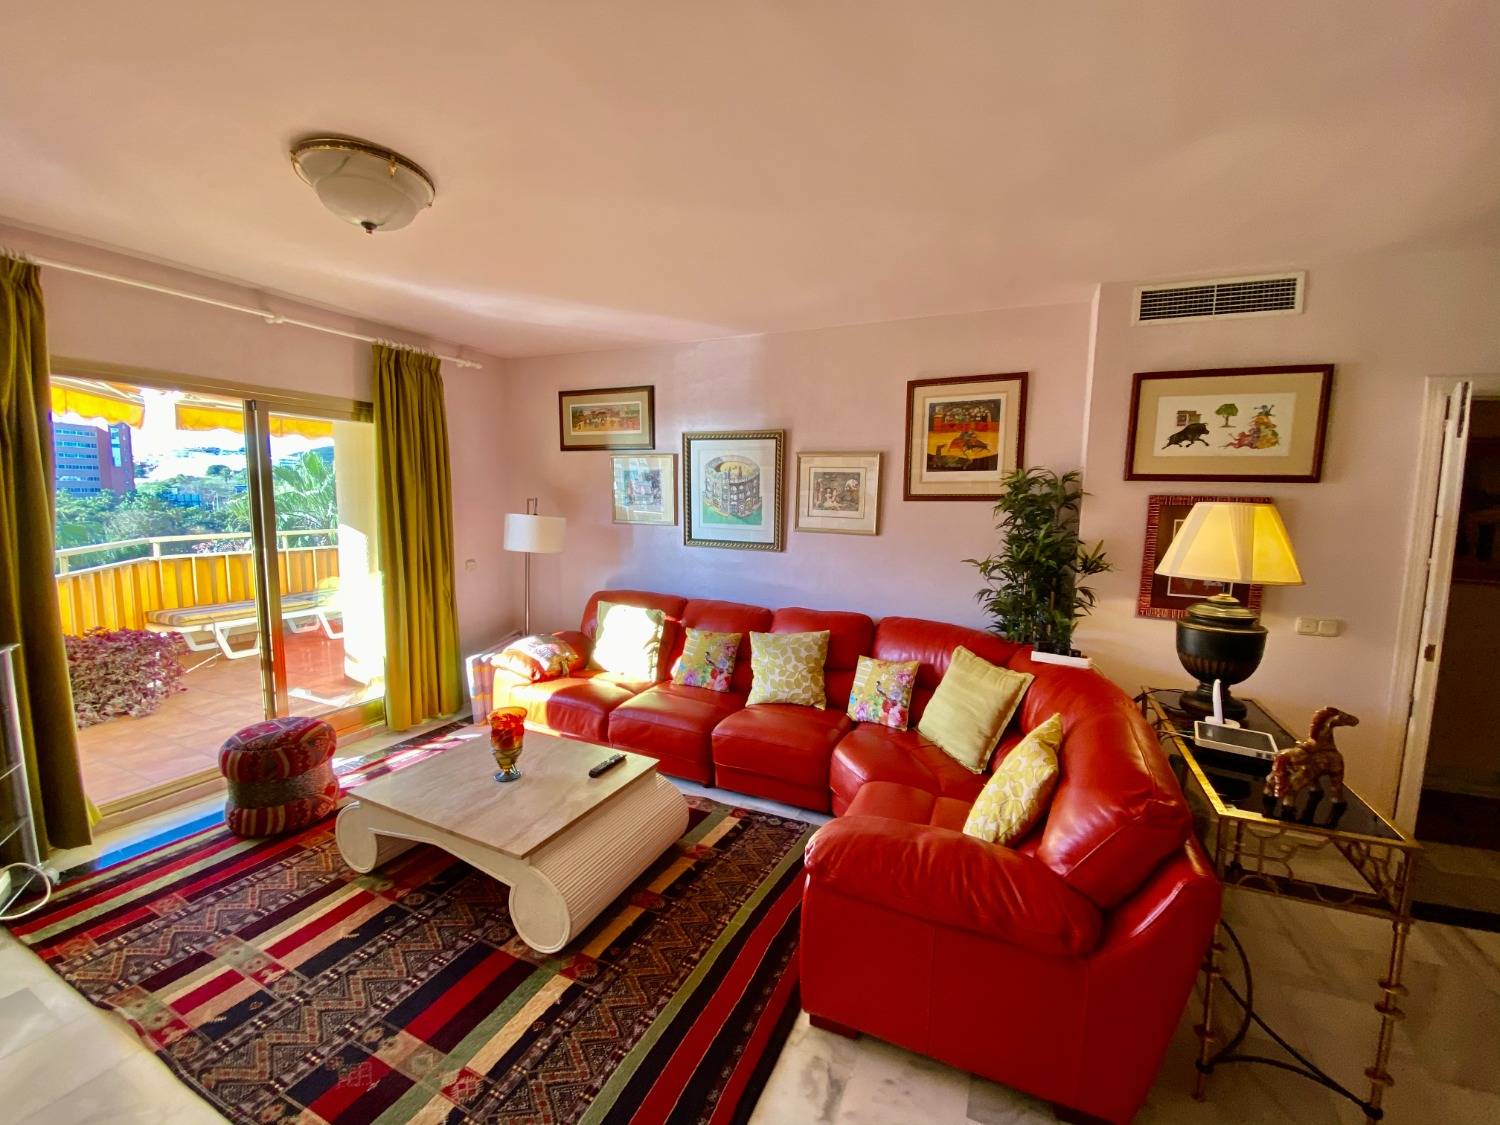 È la tua casa al mare, a Fuengirola, 3 camere da letto, wifi, aria condizionata, divertiti.